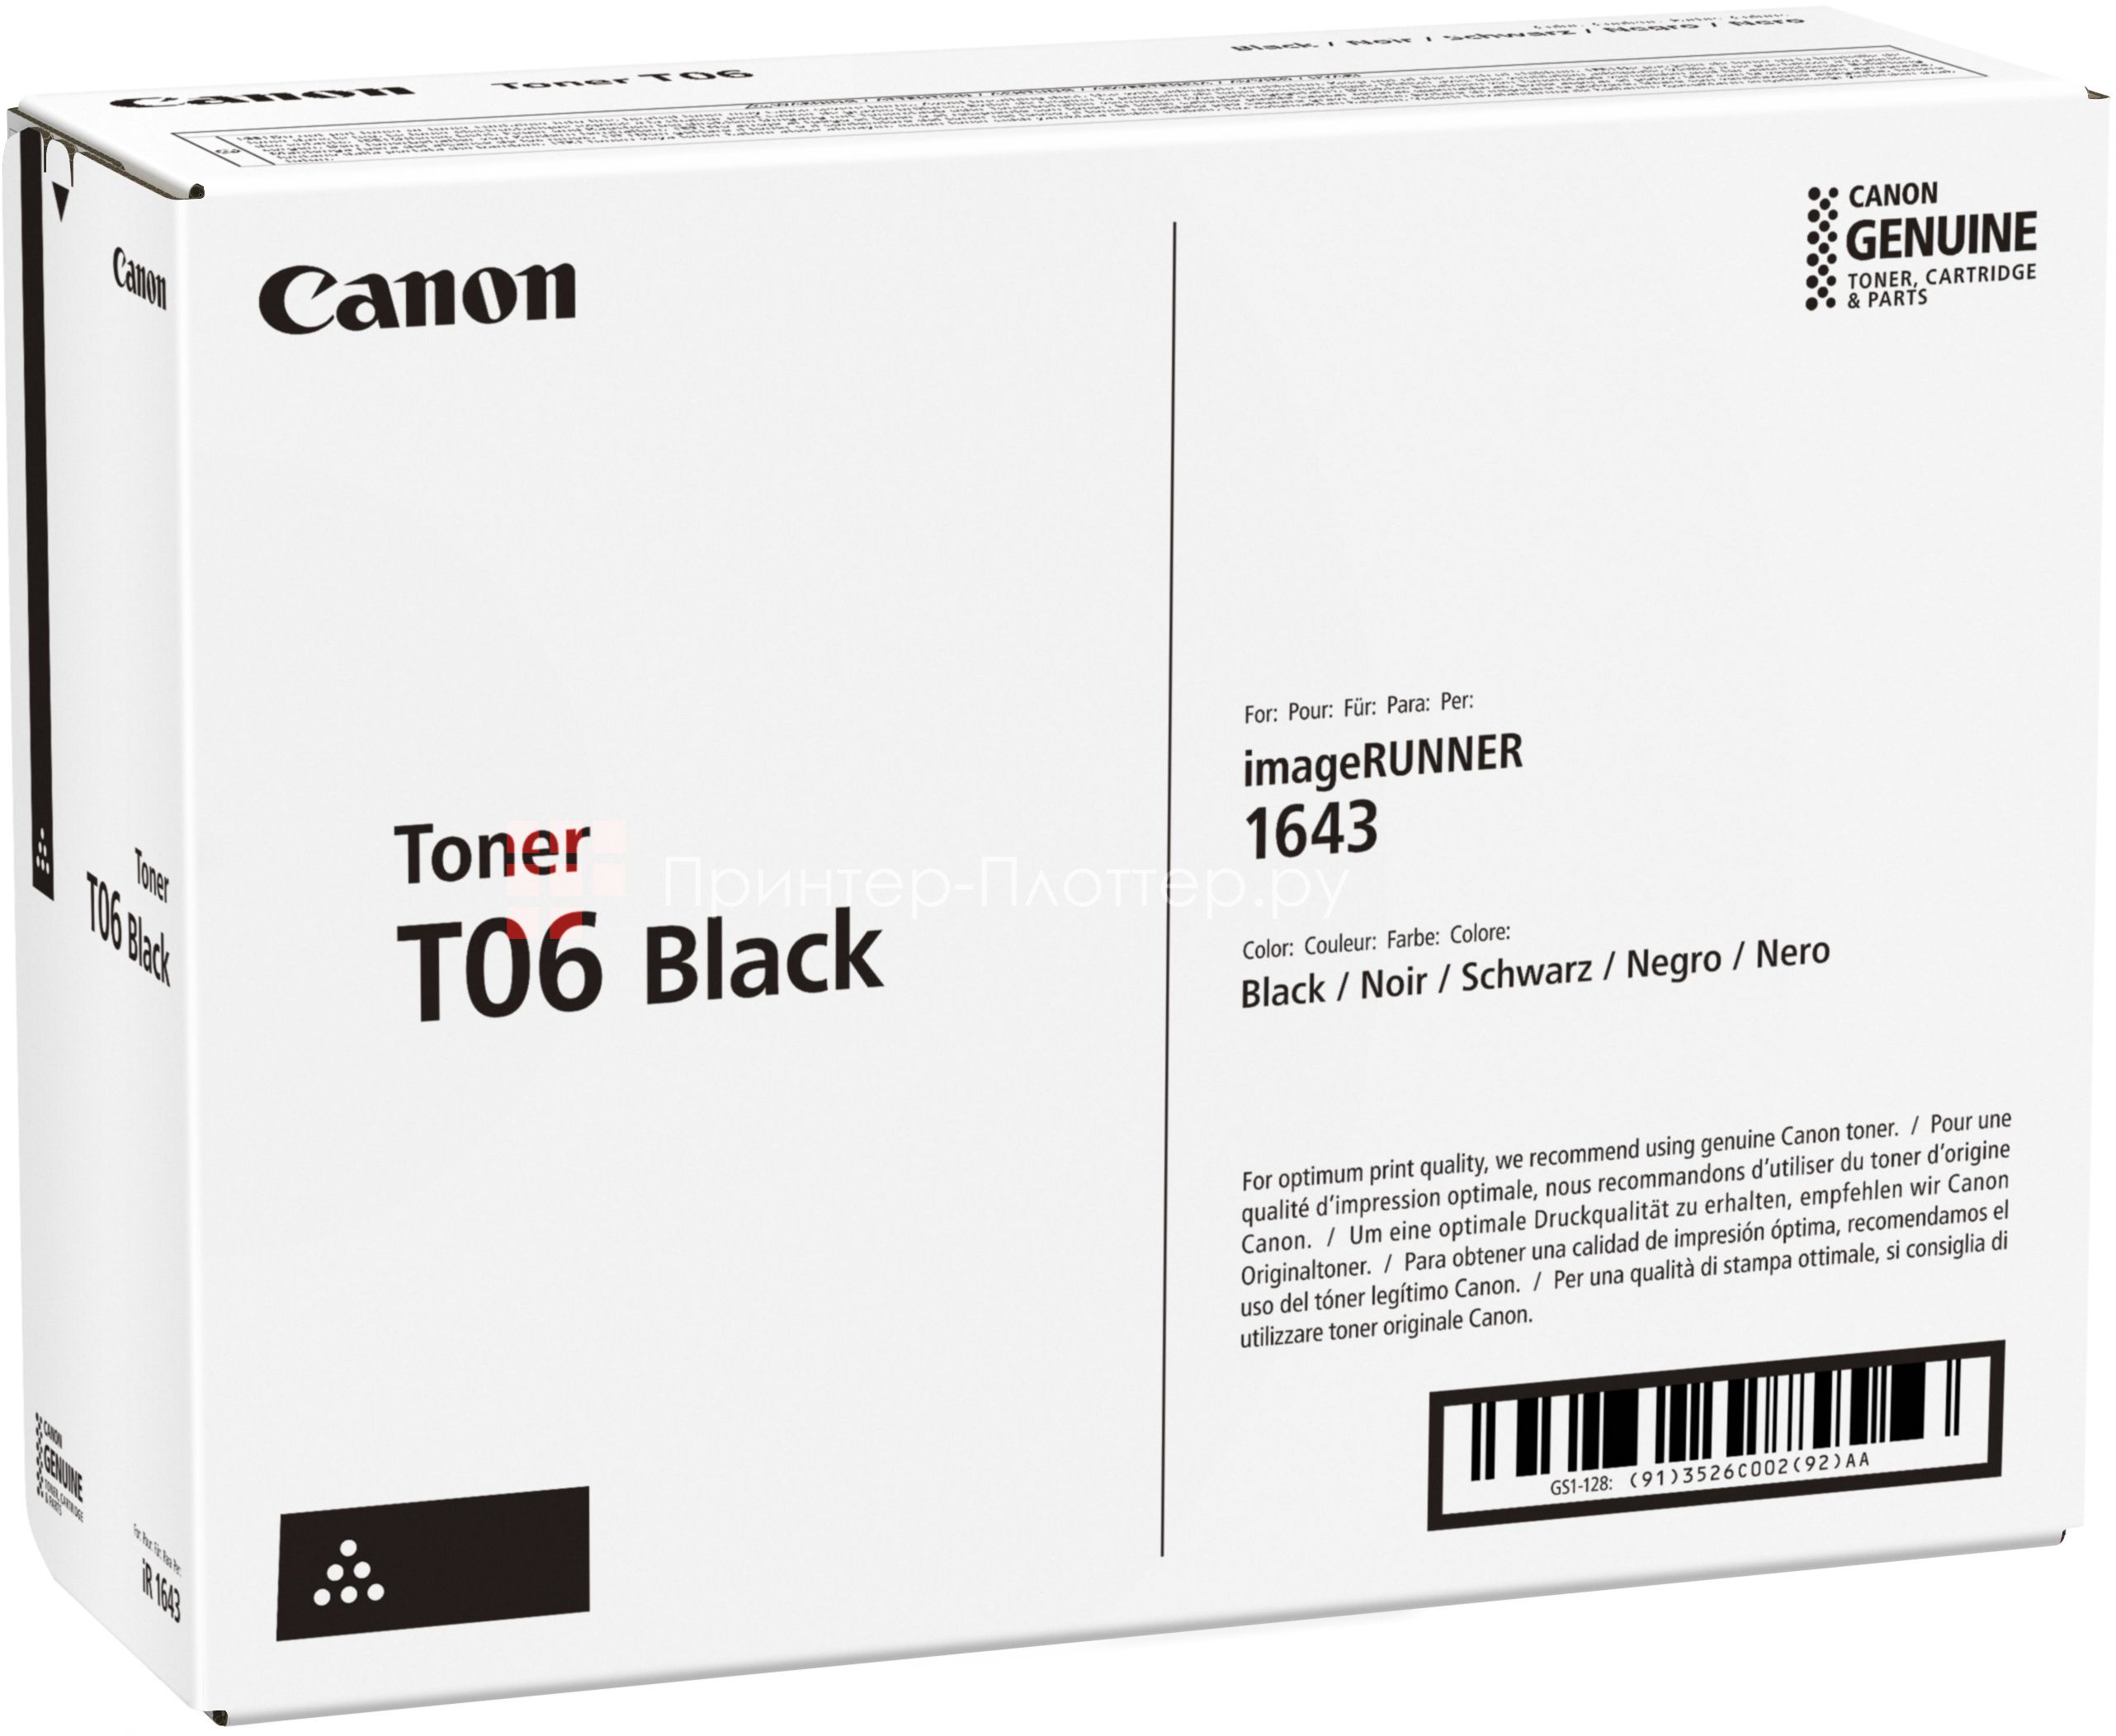 купить Тонер-картридж Canon/T06 Black/для imageRUNNER 1643i/1643 в Алматы